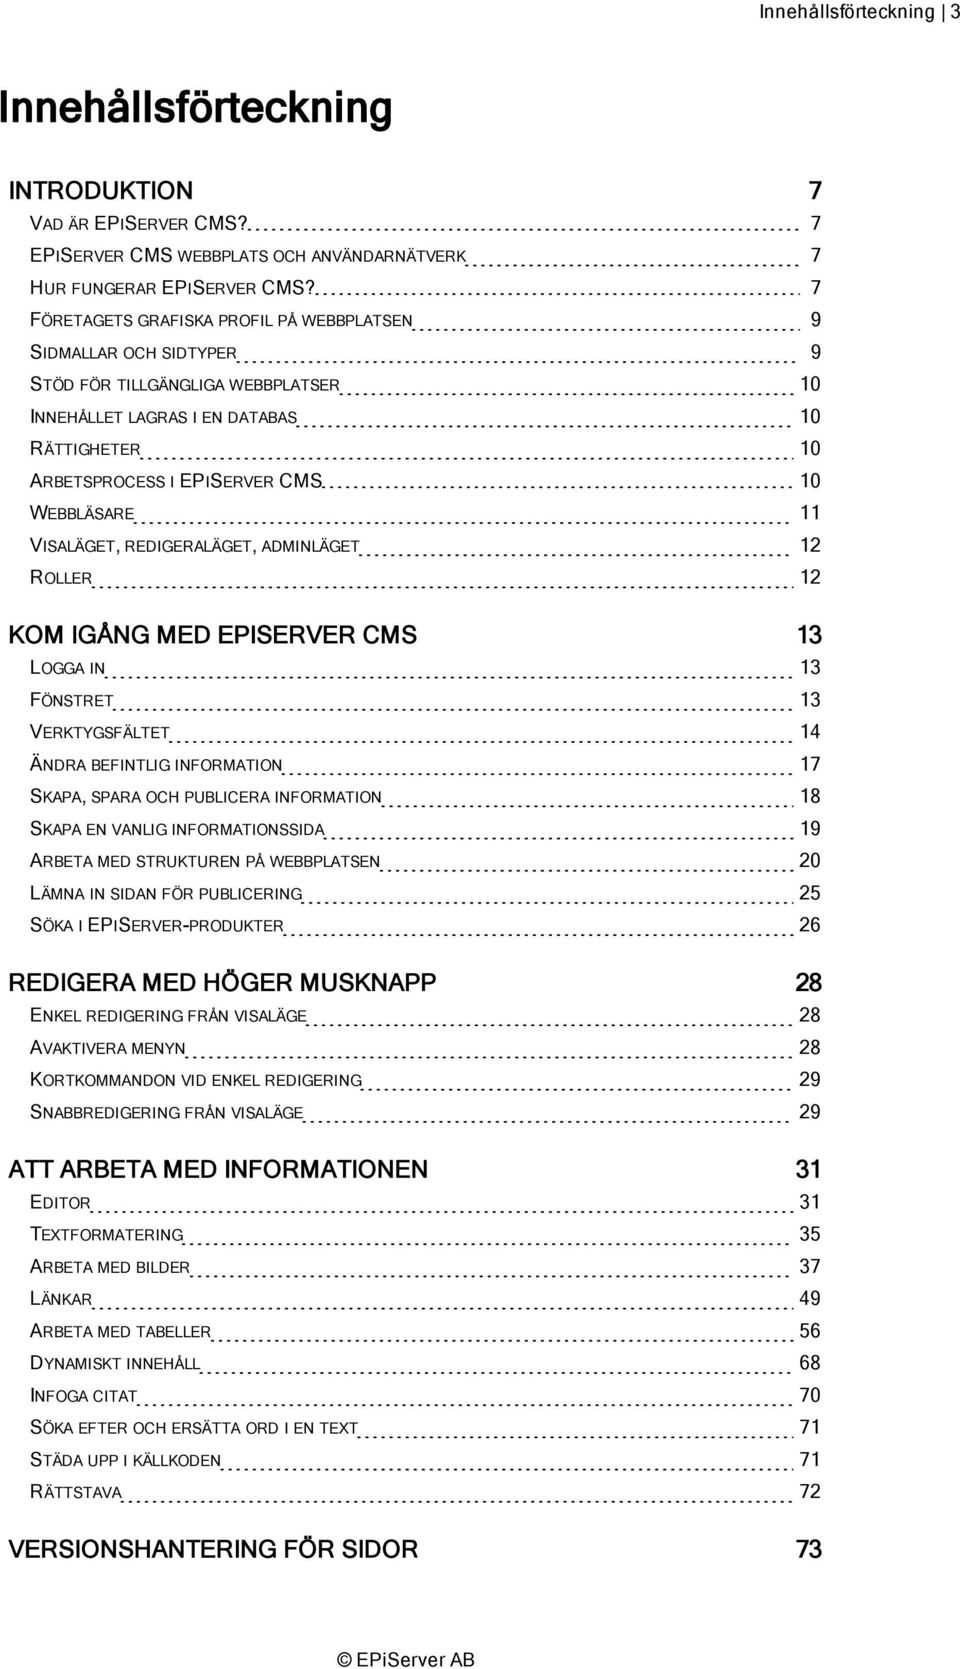 WEBBLÄSARE 11 VISALÄGET, REDIGERALÄGET, ADMINLÄGET 12 ROLLER 12 KOM IGÅNG MED EPISERVER CMS 13 LOGGA IN 13 FÖNSTRET 13 VERKTYGSFÄLTET 14 ÄNDRA BEFINTLIG INFORMATION 17 SKAPA, SPARA OCH PUBLICERA